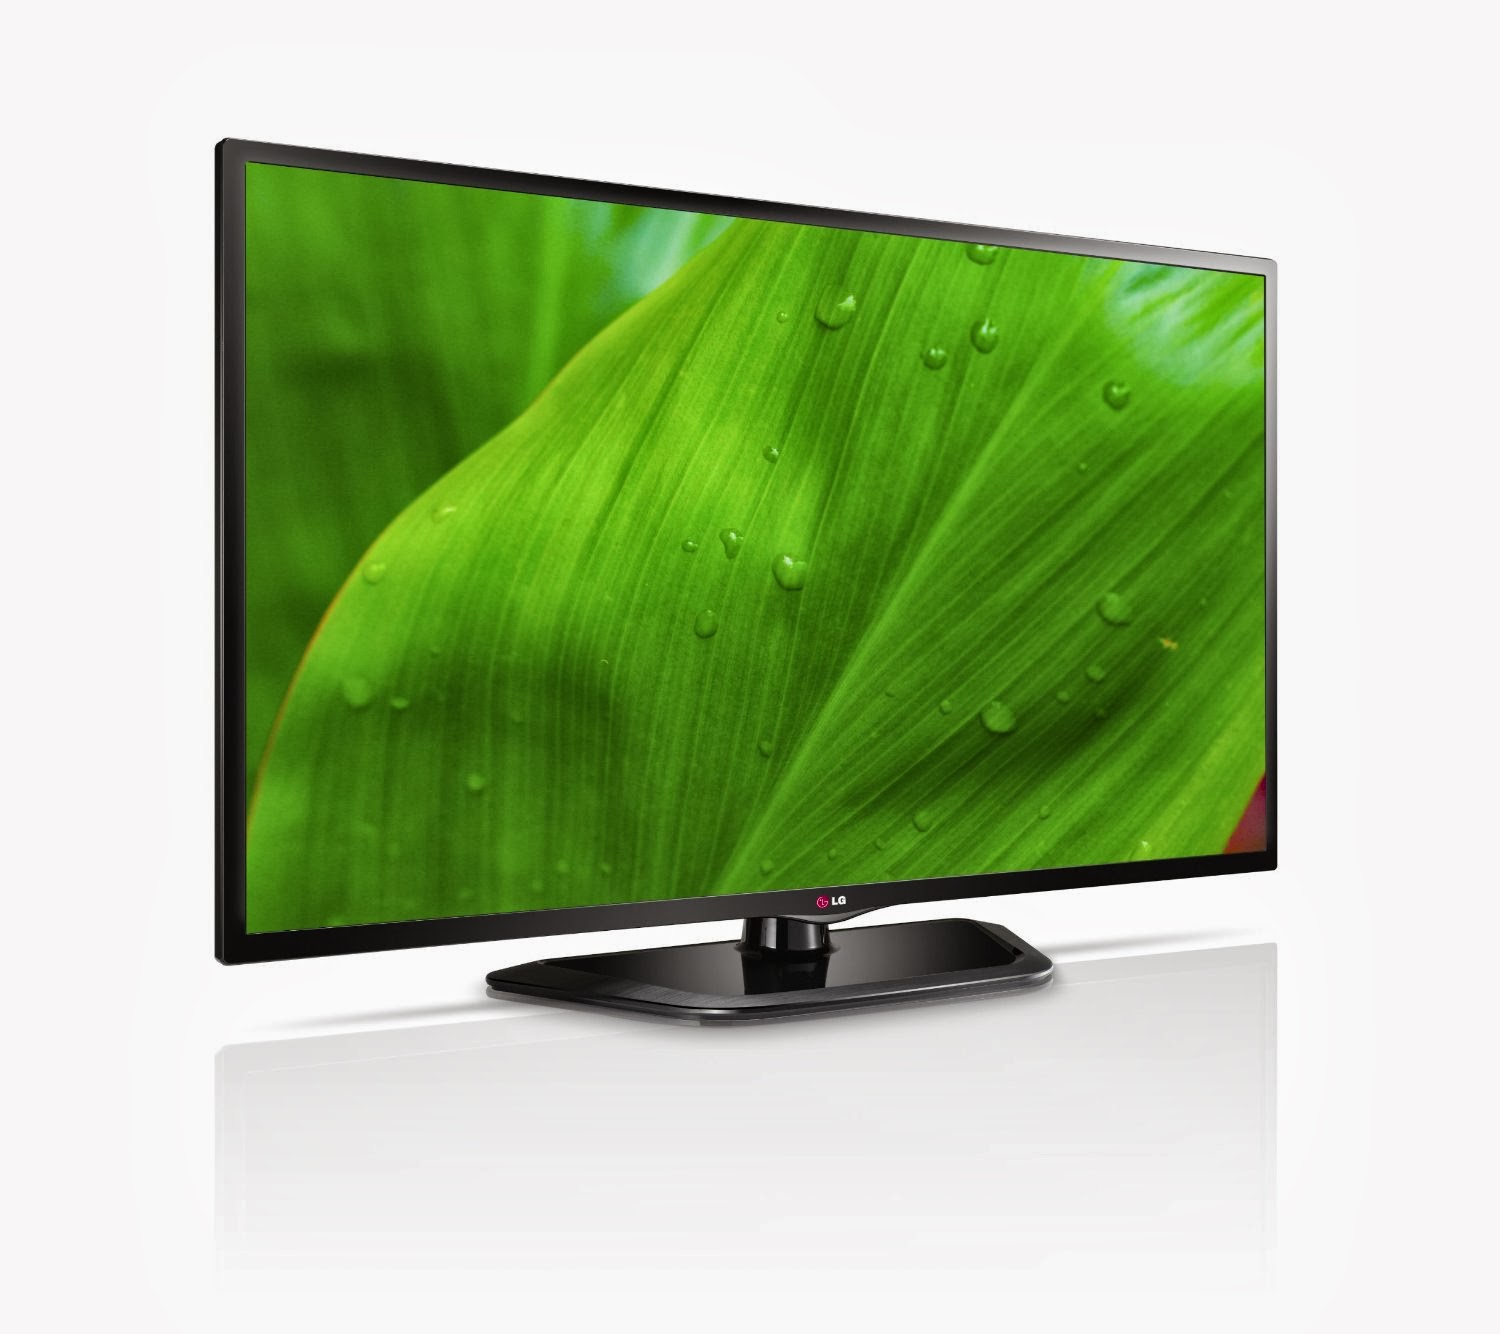  LG 50PV450 50-Inch 1080p 600 Hz Plasma HDTV 